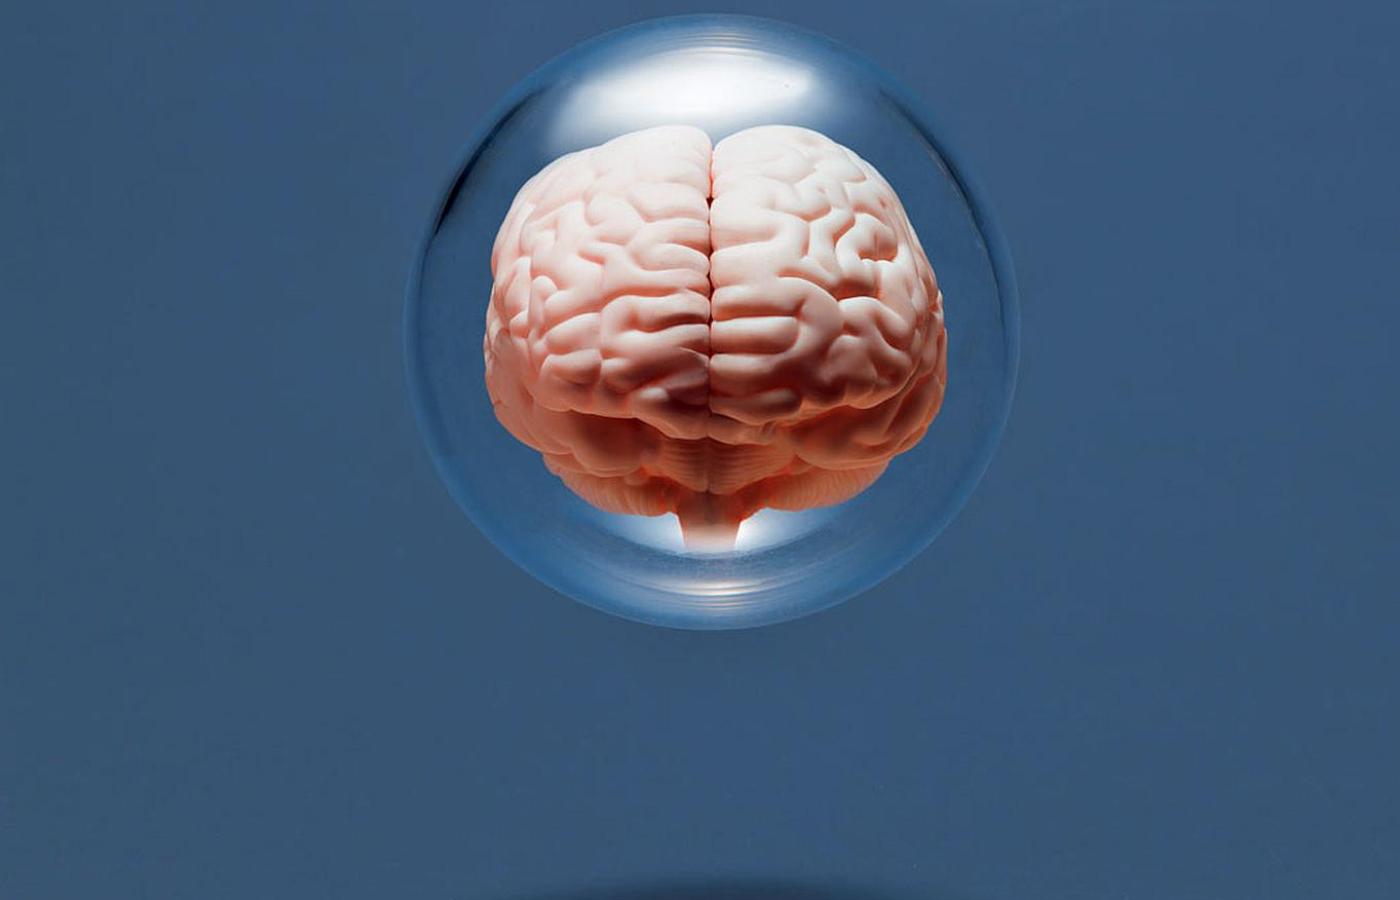 Mózg cały czas się zmienia, tworząc nowe połączenia, np. podczas zapamiętywania informacji czy uczenia się nowych umiejętności.